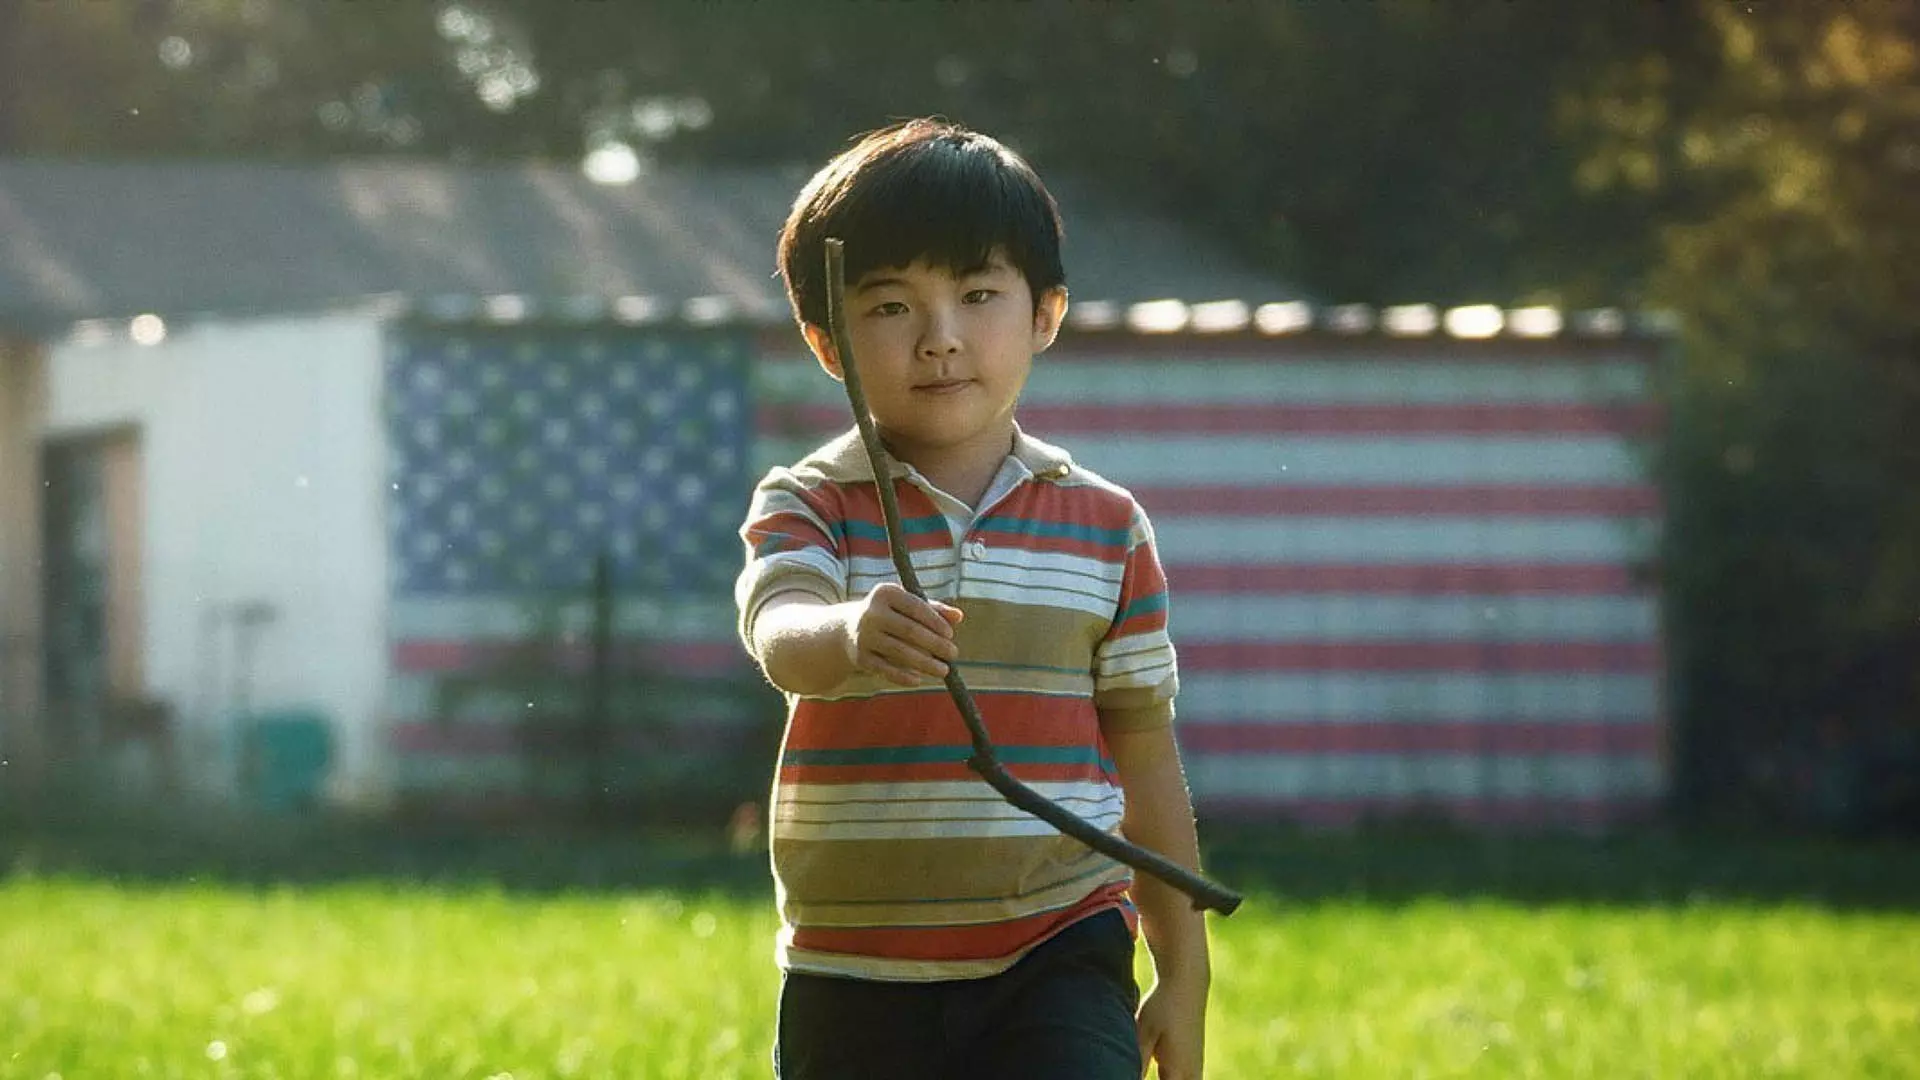 پسر بچه کره‌ای در مزرعه آمریکایی در فیلم Minari